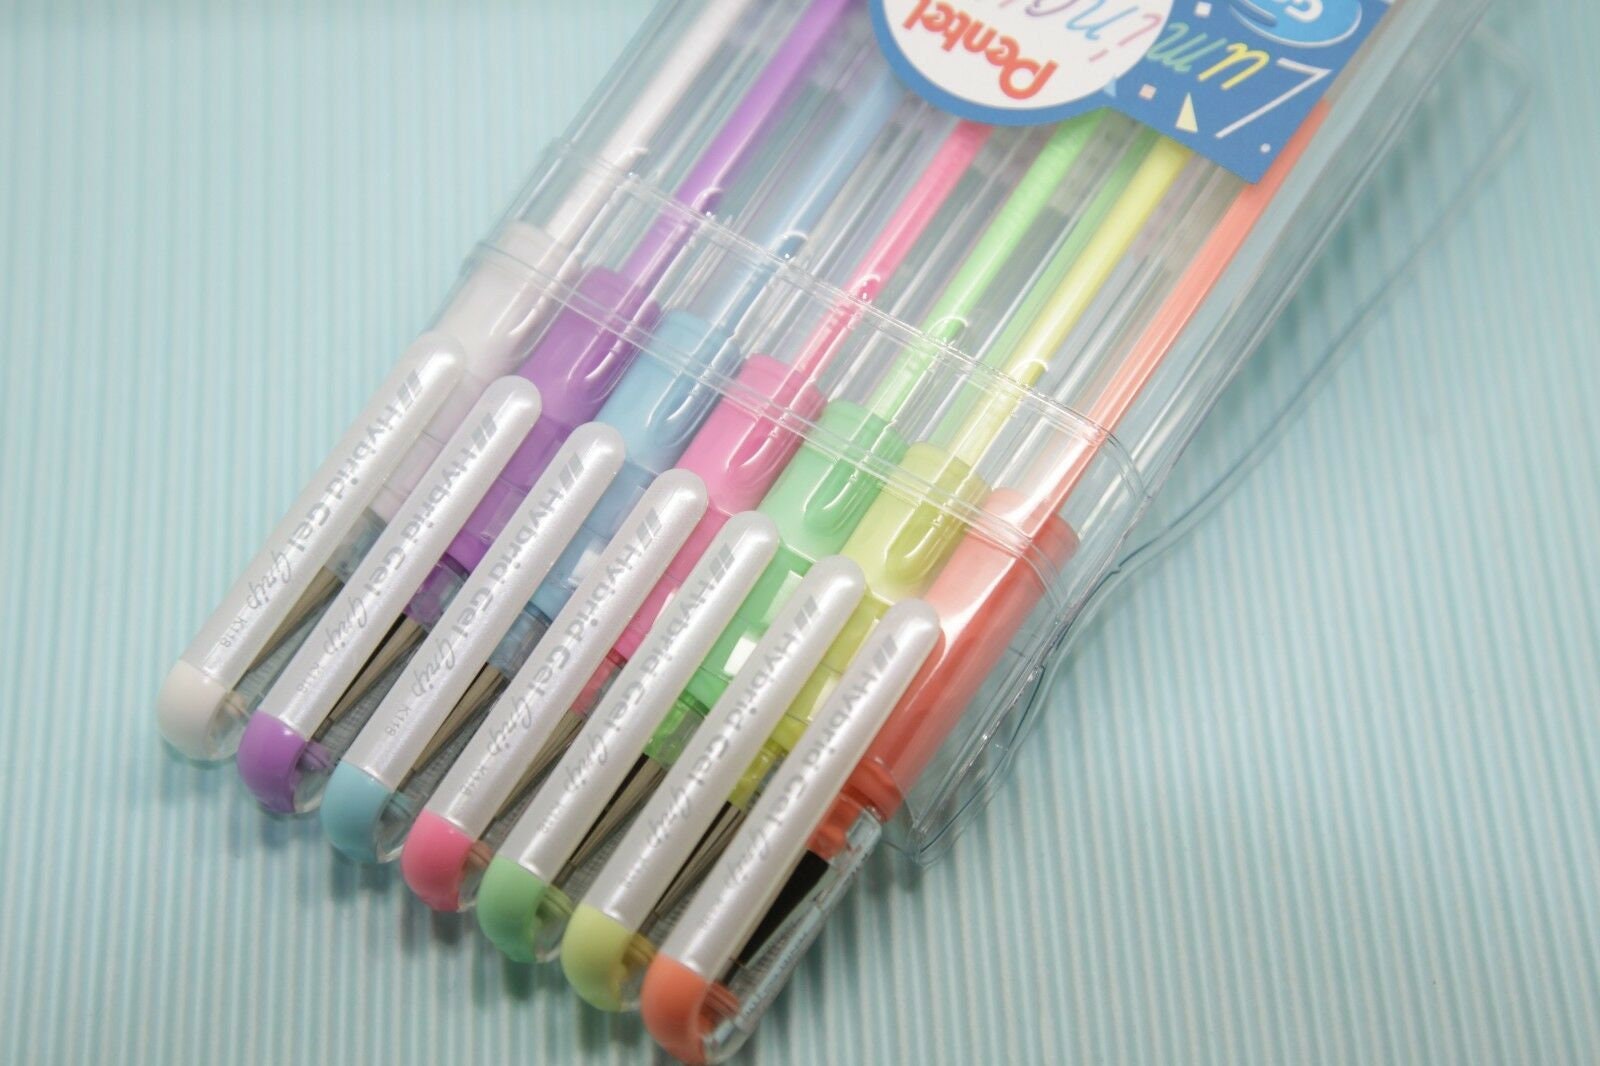 Pentel Hybrid Dual Metallic Pens, 9 Pack, Glitter Gel Pens, Gel